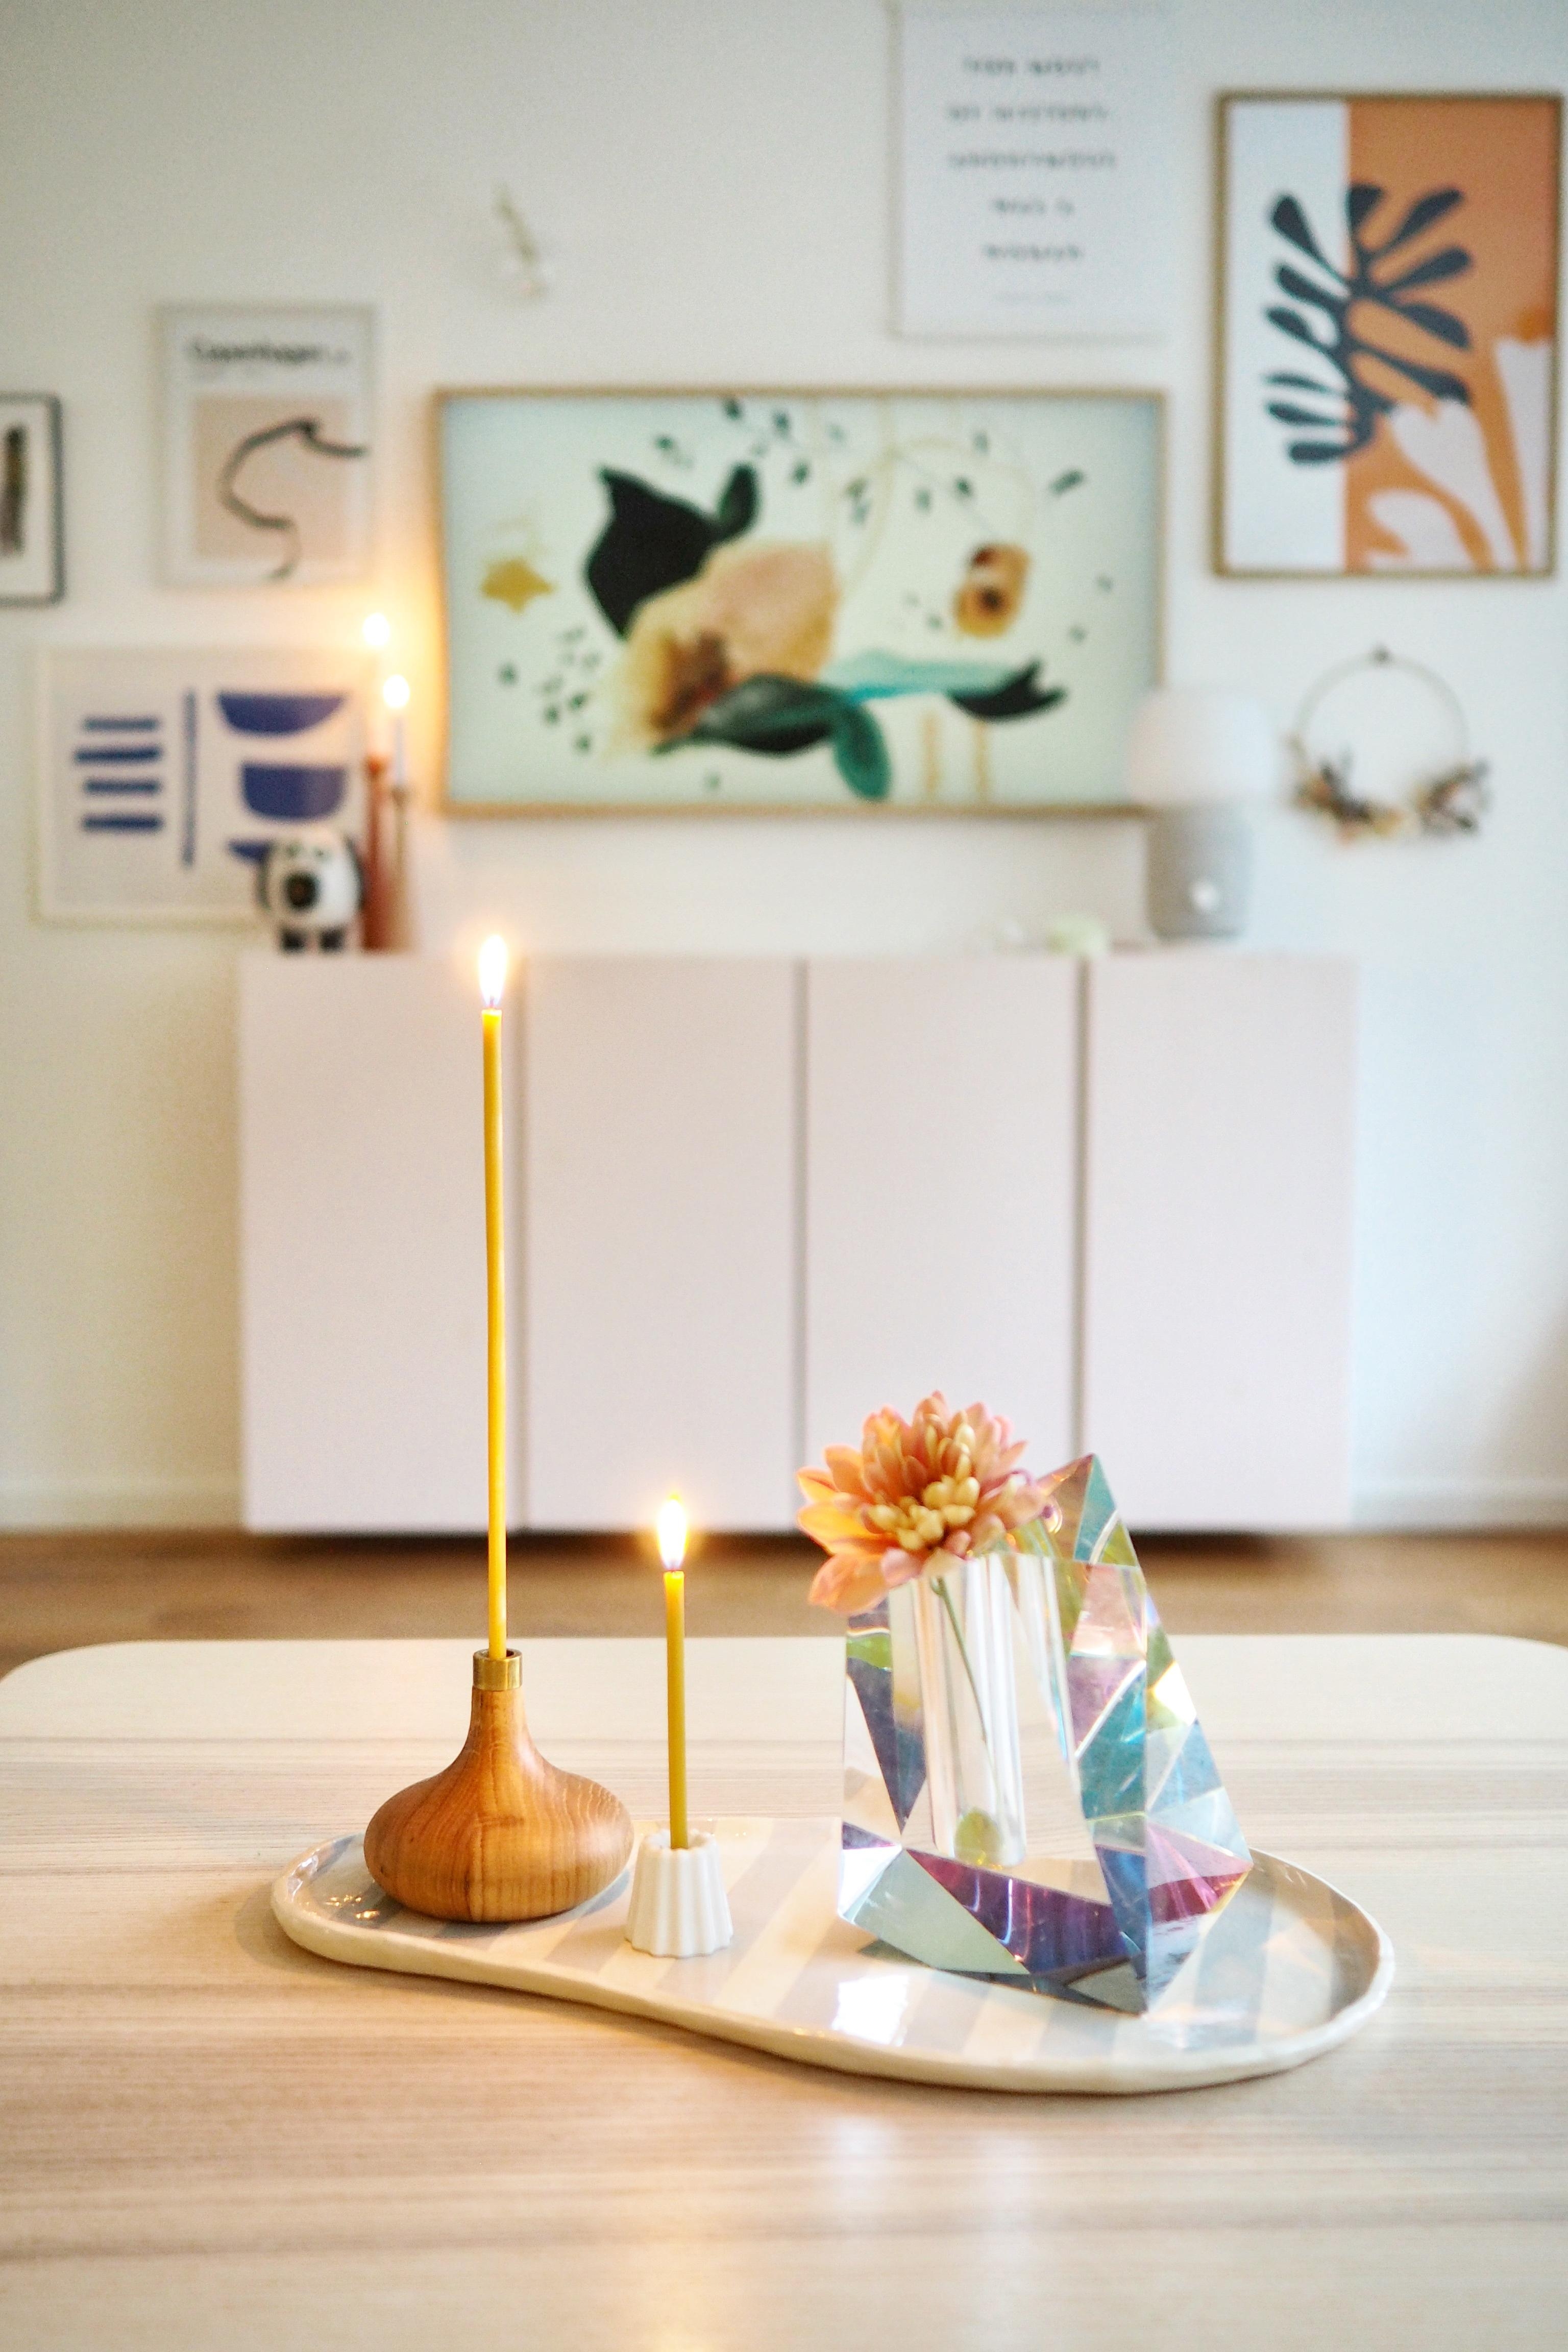 Wer motiviert sich auch mit hübschen Dingen und Kerzenschein?
#wohnzimmer #couchtisch 